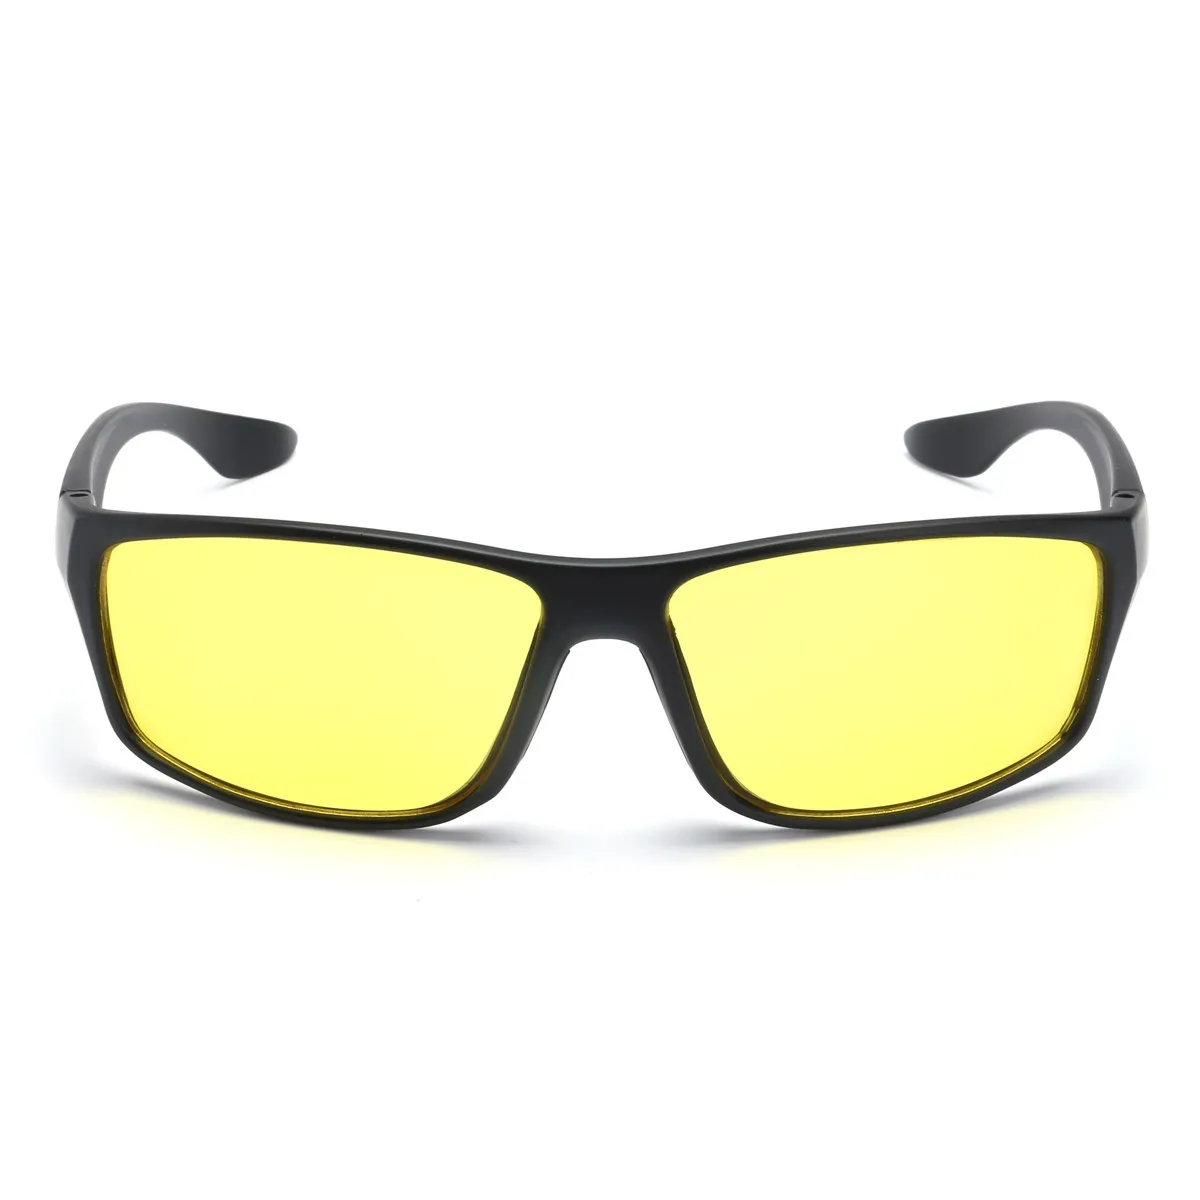 Safurance унисекс очки для ночного вождения с антибликовым покрытием, защитные очки для водителя, очки для защиты глаз на рабочем месте